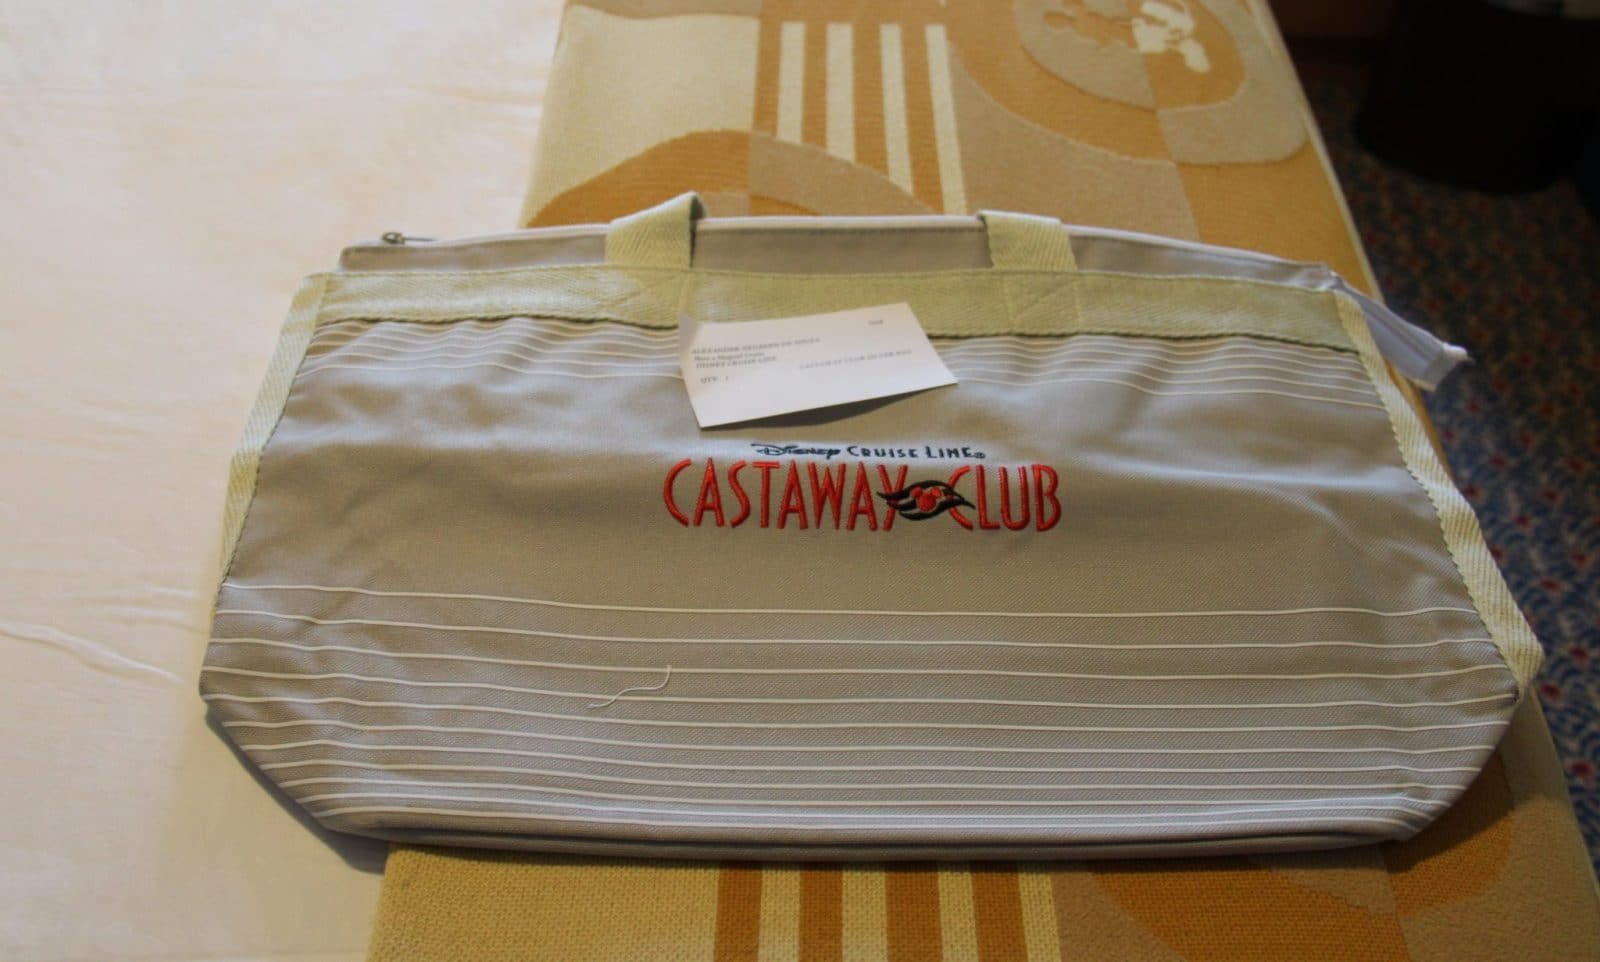 Castaway Club